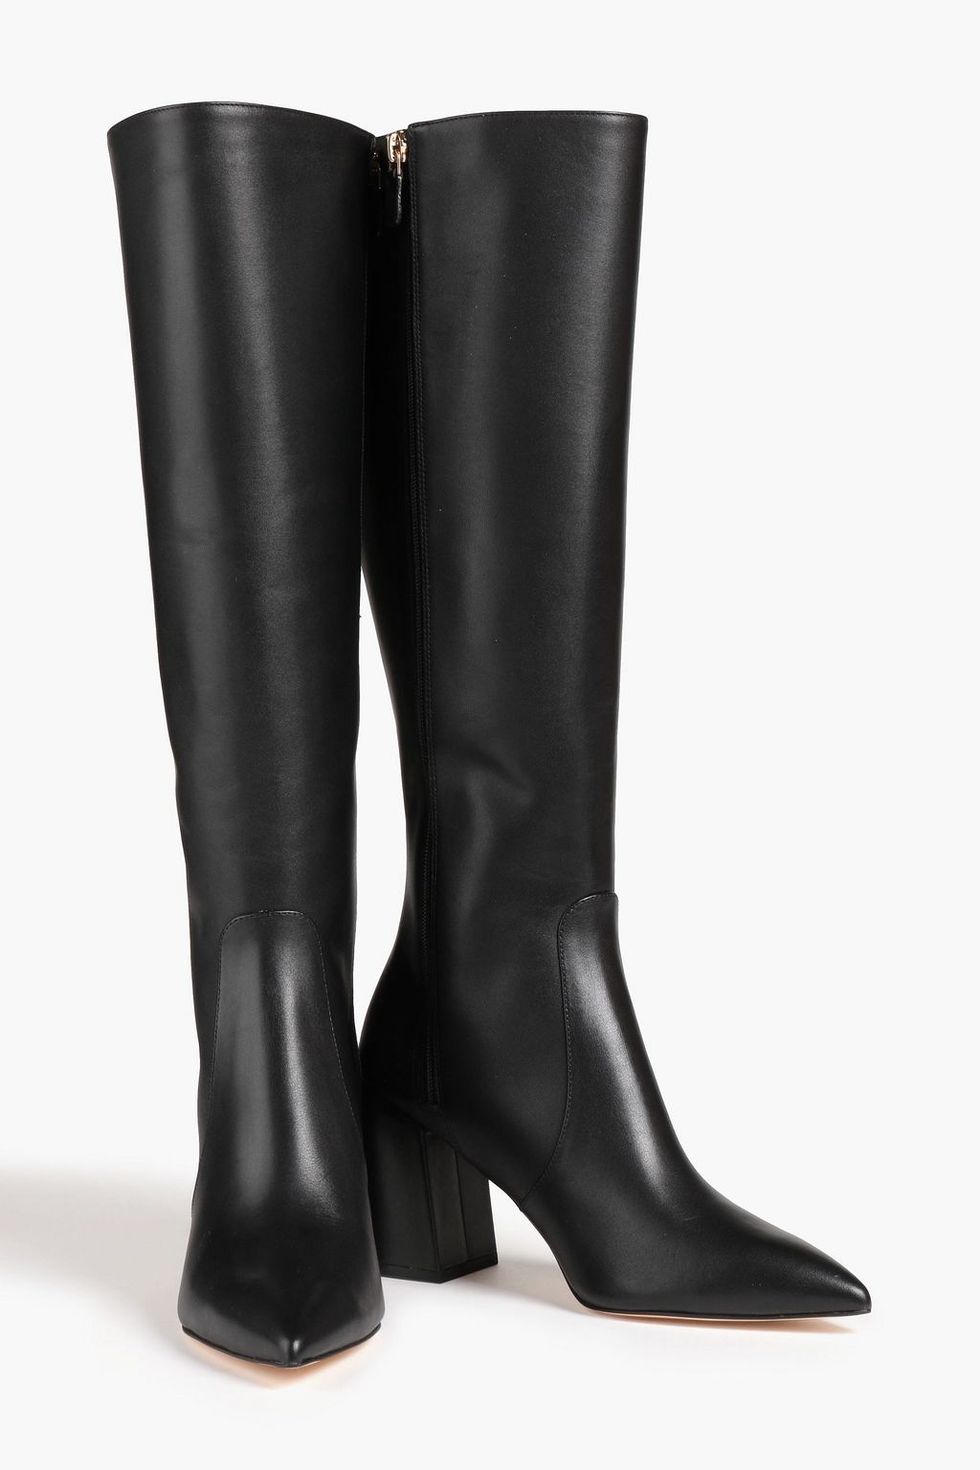 Best knee high boots: Shop women's knee high boots